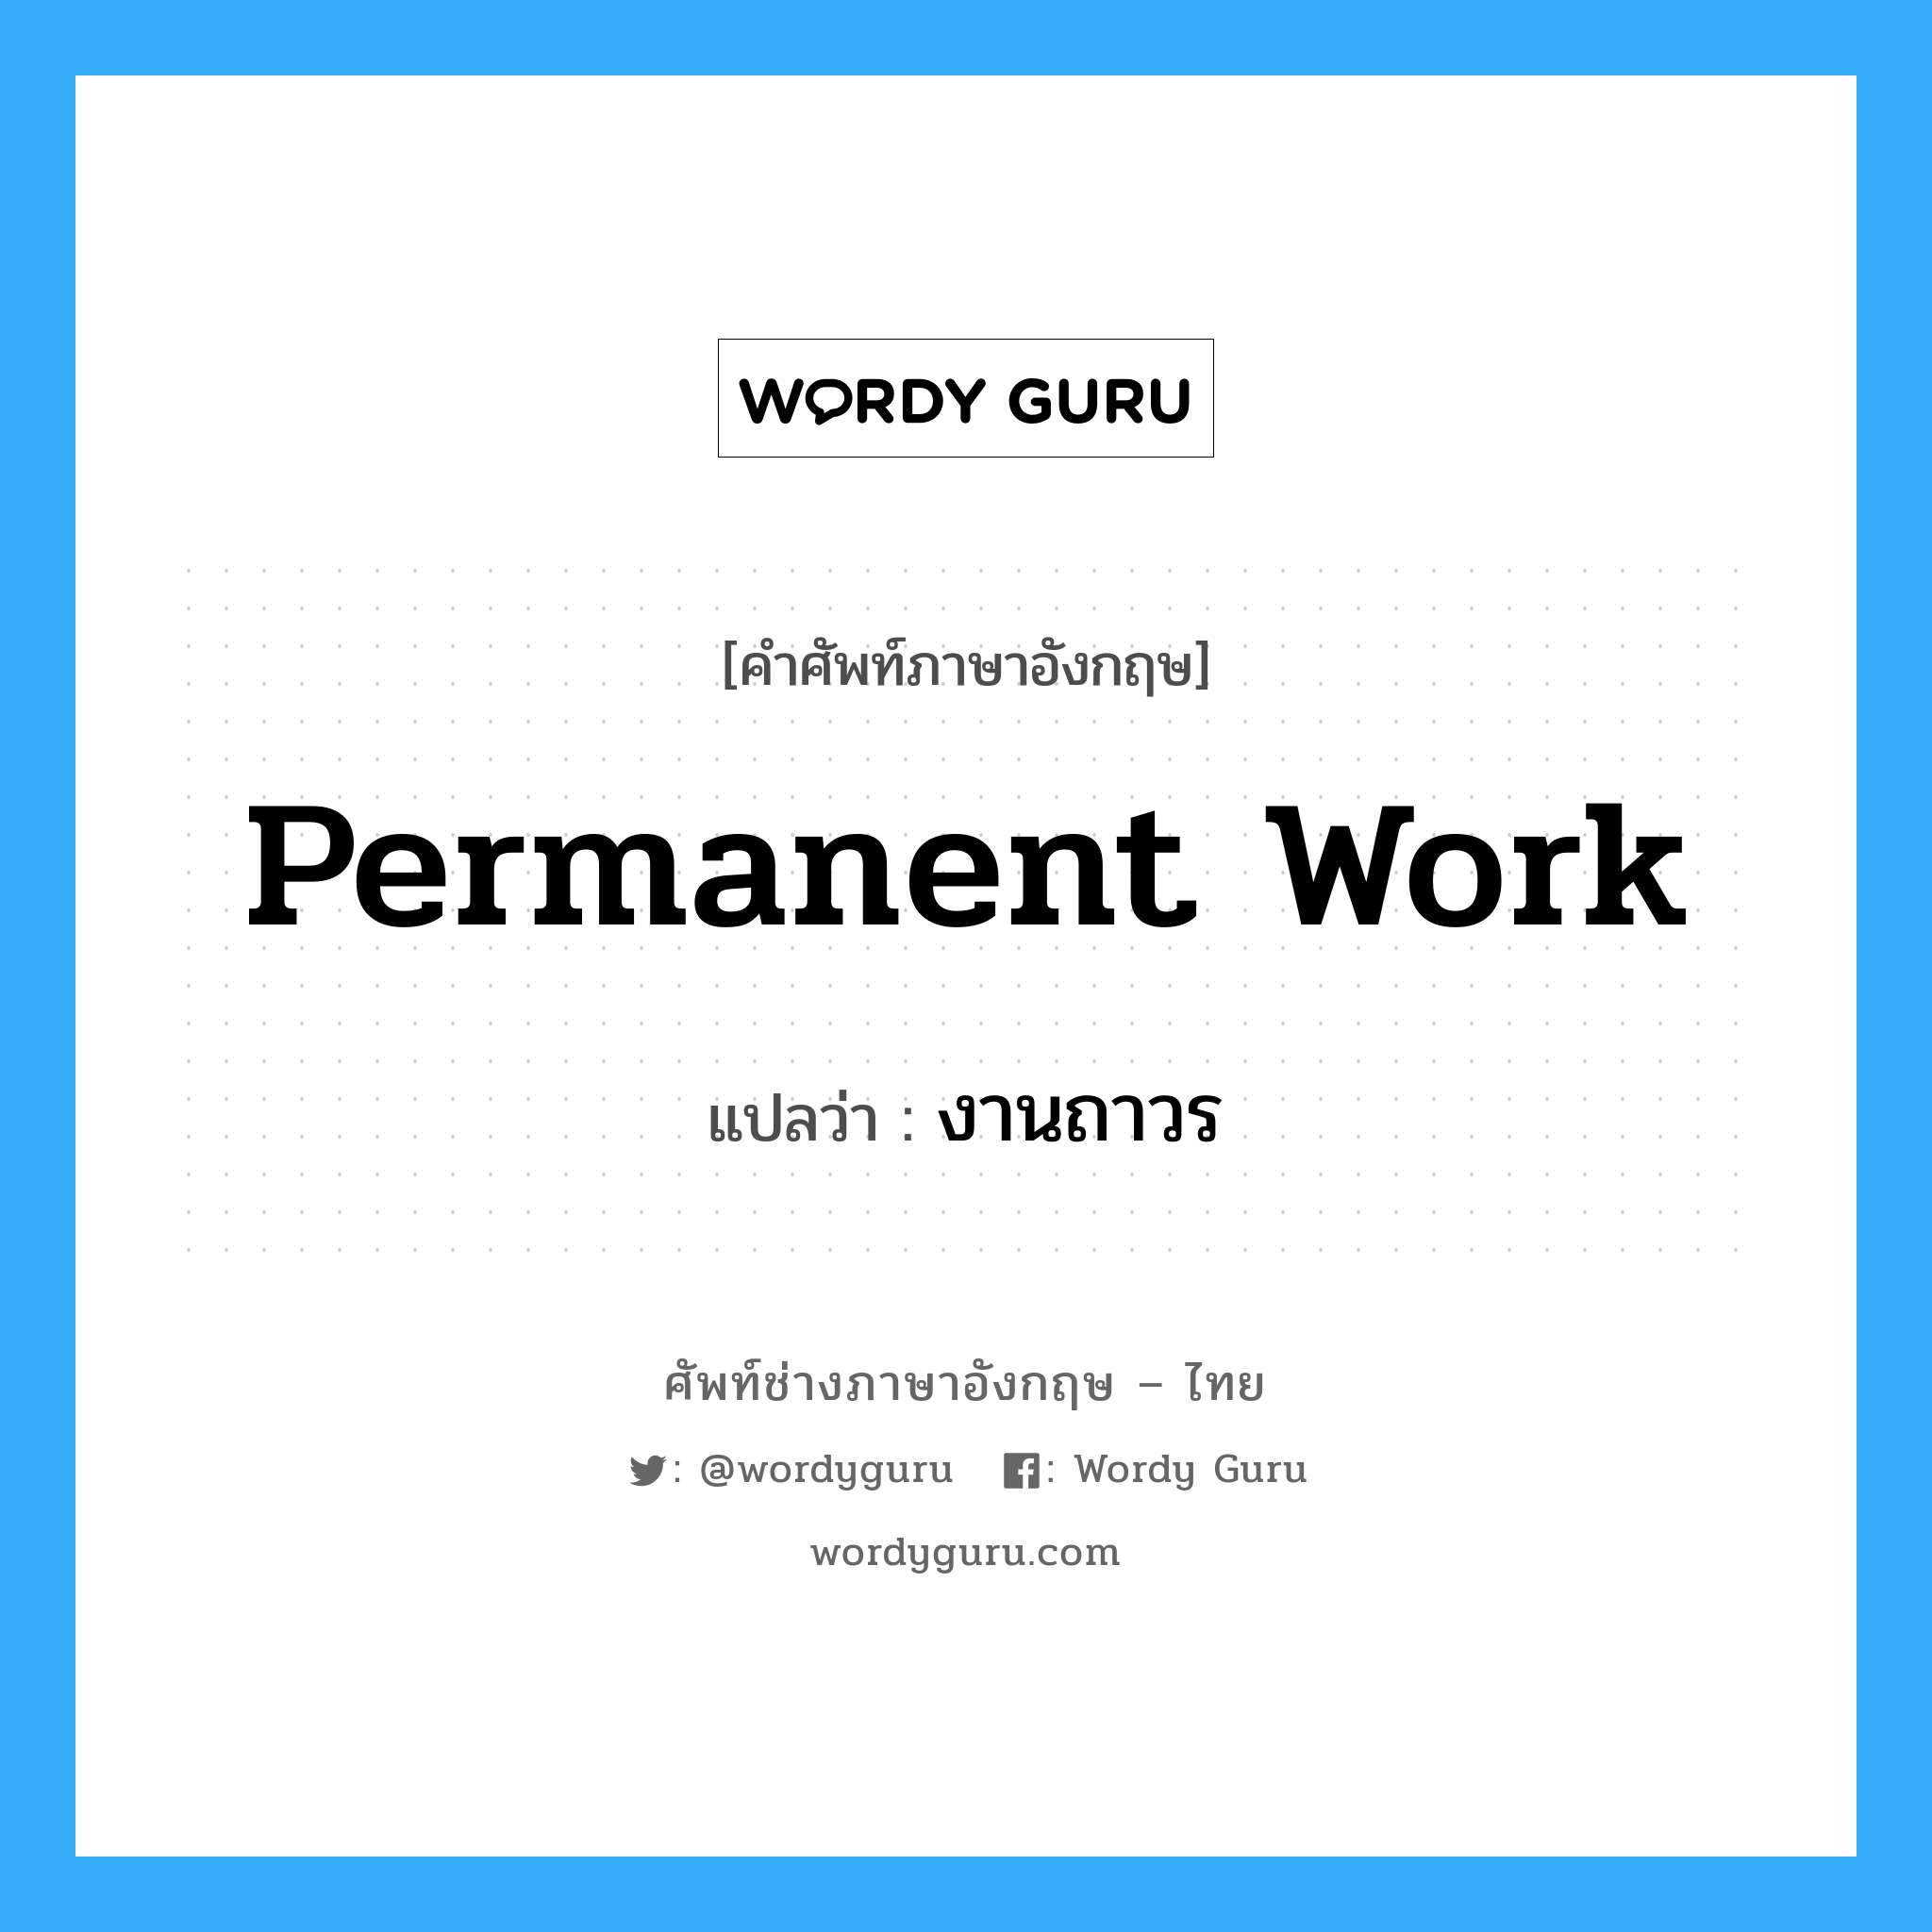 งานถาวร ภาษาอังกฤษ?, คำศัพท์ช่างภาษาอังกฤษ - ไทย งานถาวร คำศัพท์ภาษาอังกฤษ งานถาวร แปลว่า Permanent Work